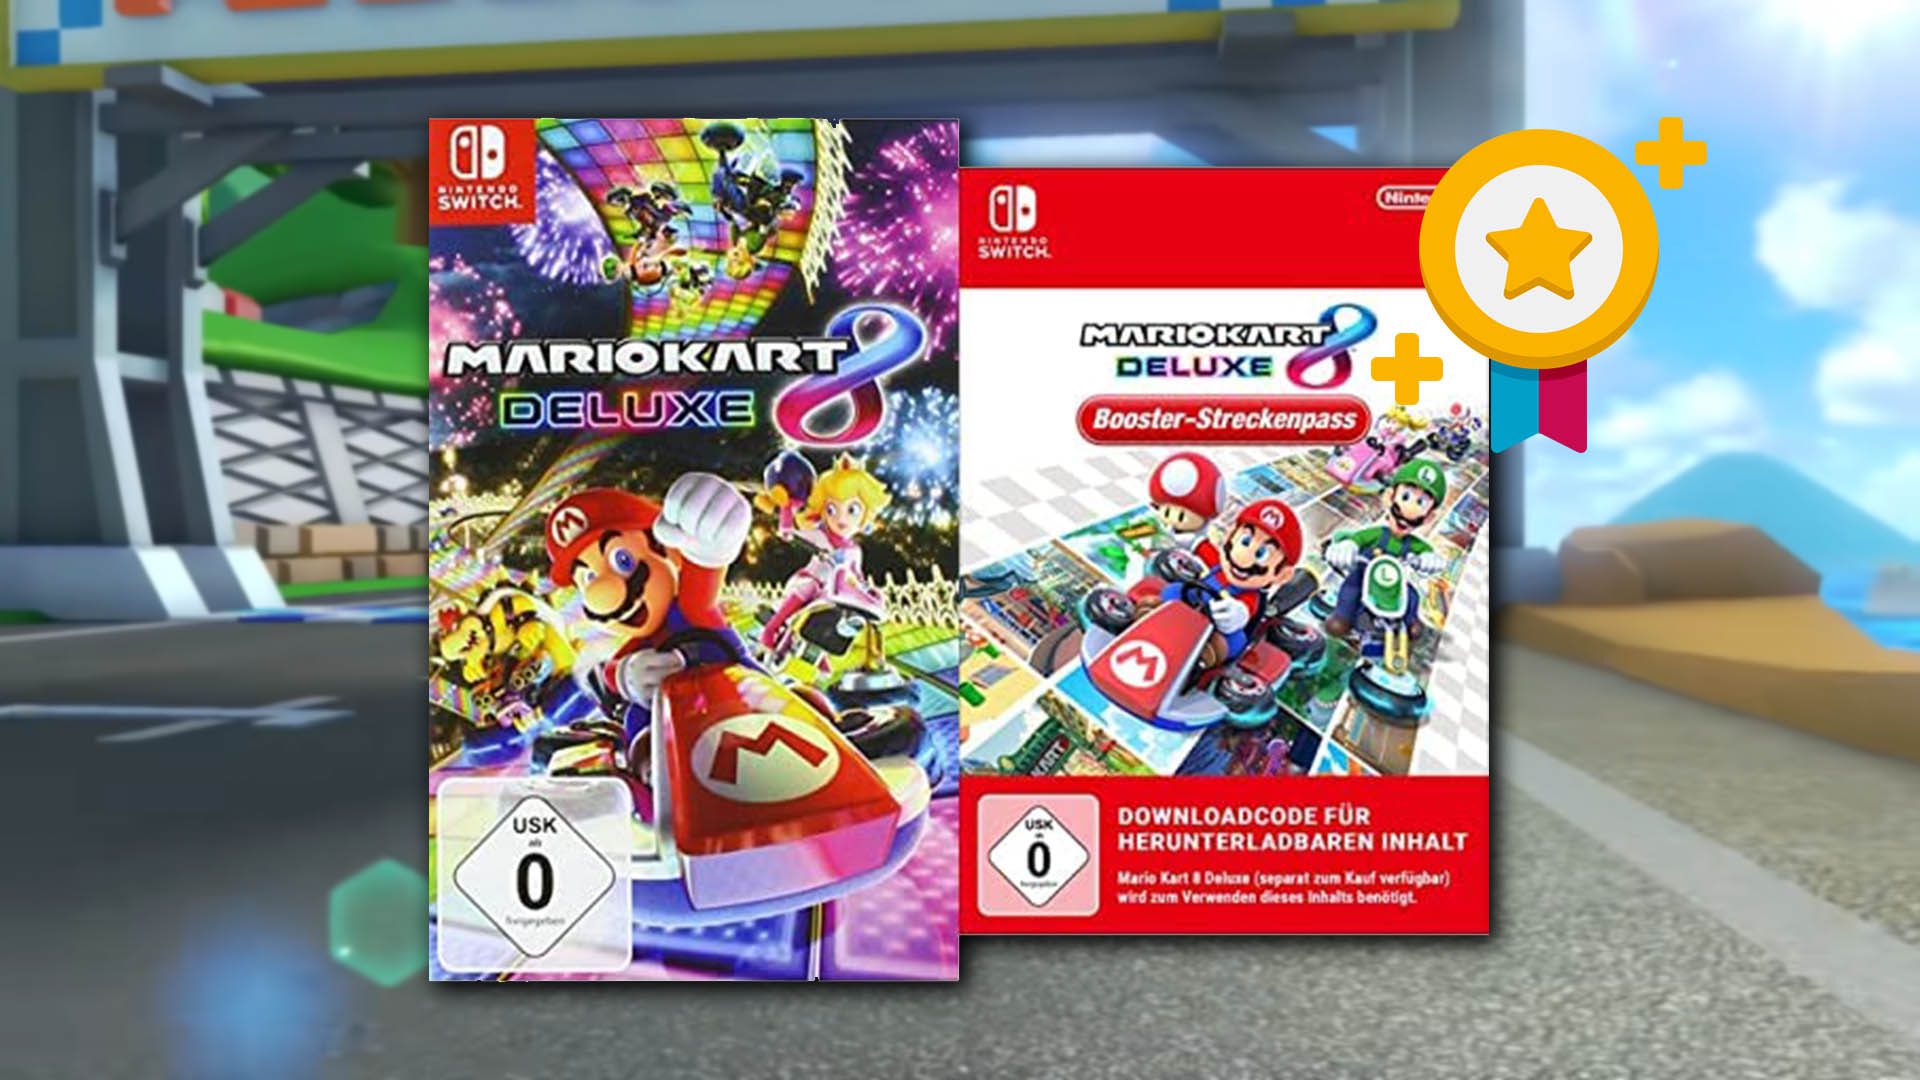 https://www.playcentral.de/wp-content/uploads/2022/02/Mario-Kart-8-Deluxe-Booster-Streckenpass-kaufen.jpg